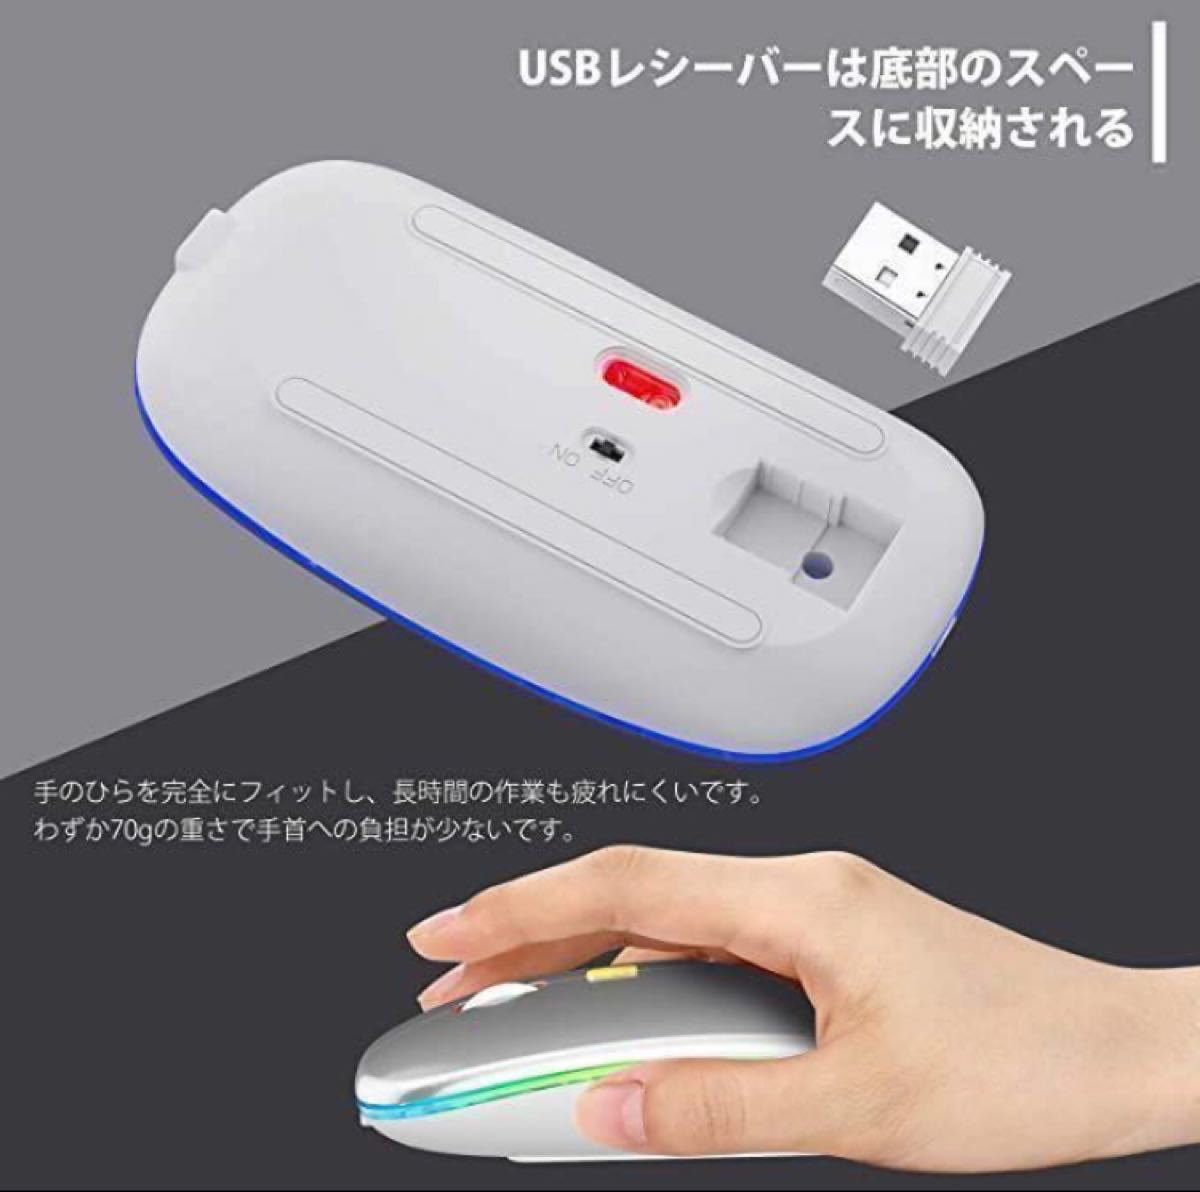 7色LEDライト　ワイヤレスマウス 超薄型 静音 無線 マウス USB 充電式 2.4GHz 3DPIモード 高精度 ブラック